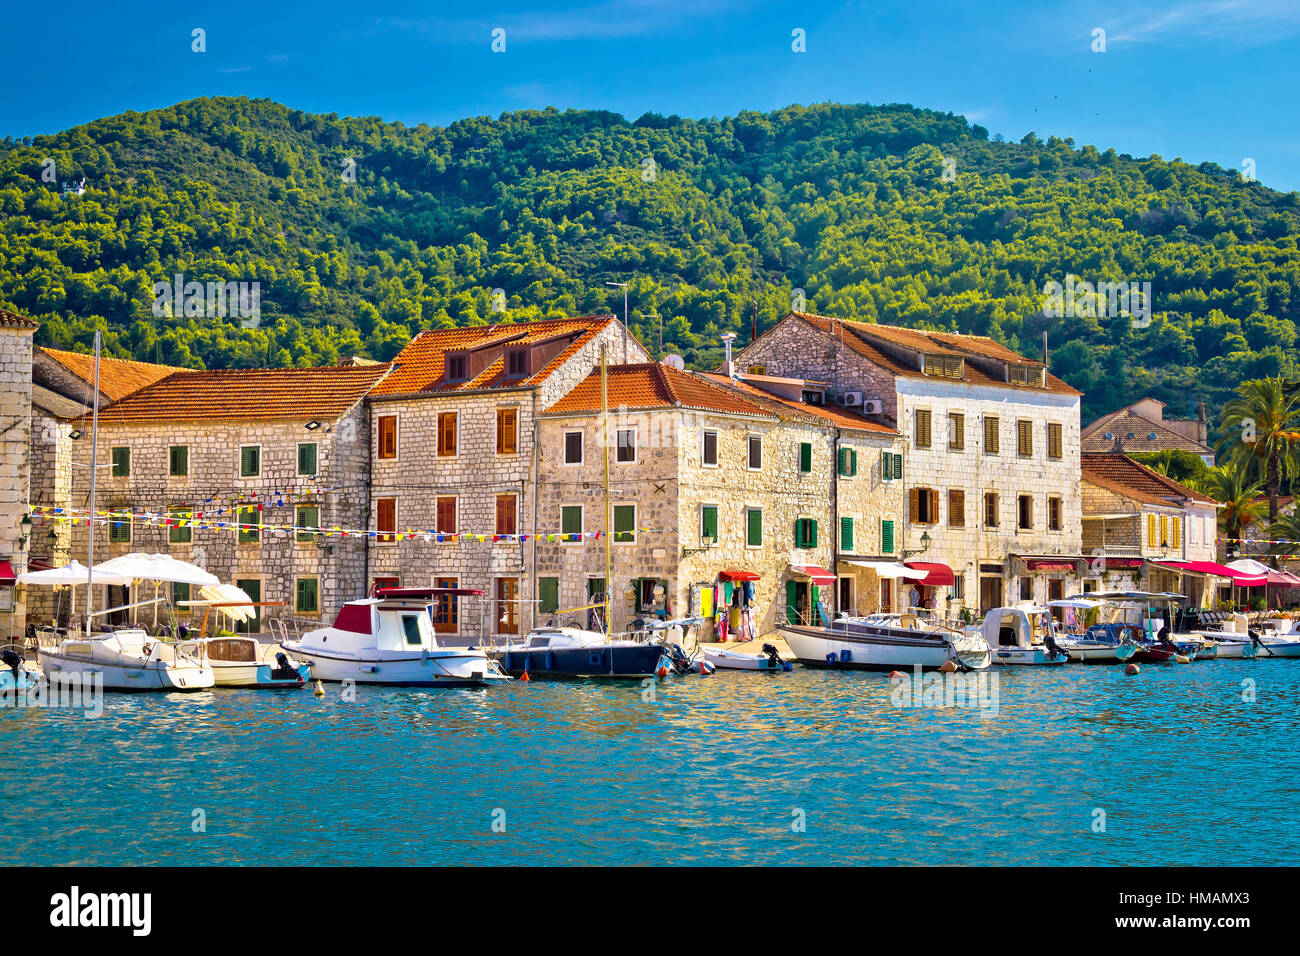 Stari Grad vista fronte mare, l'isola di Hvar, Croazia Foto Stock